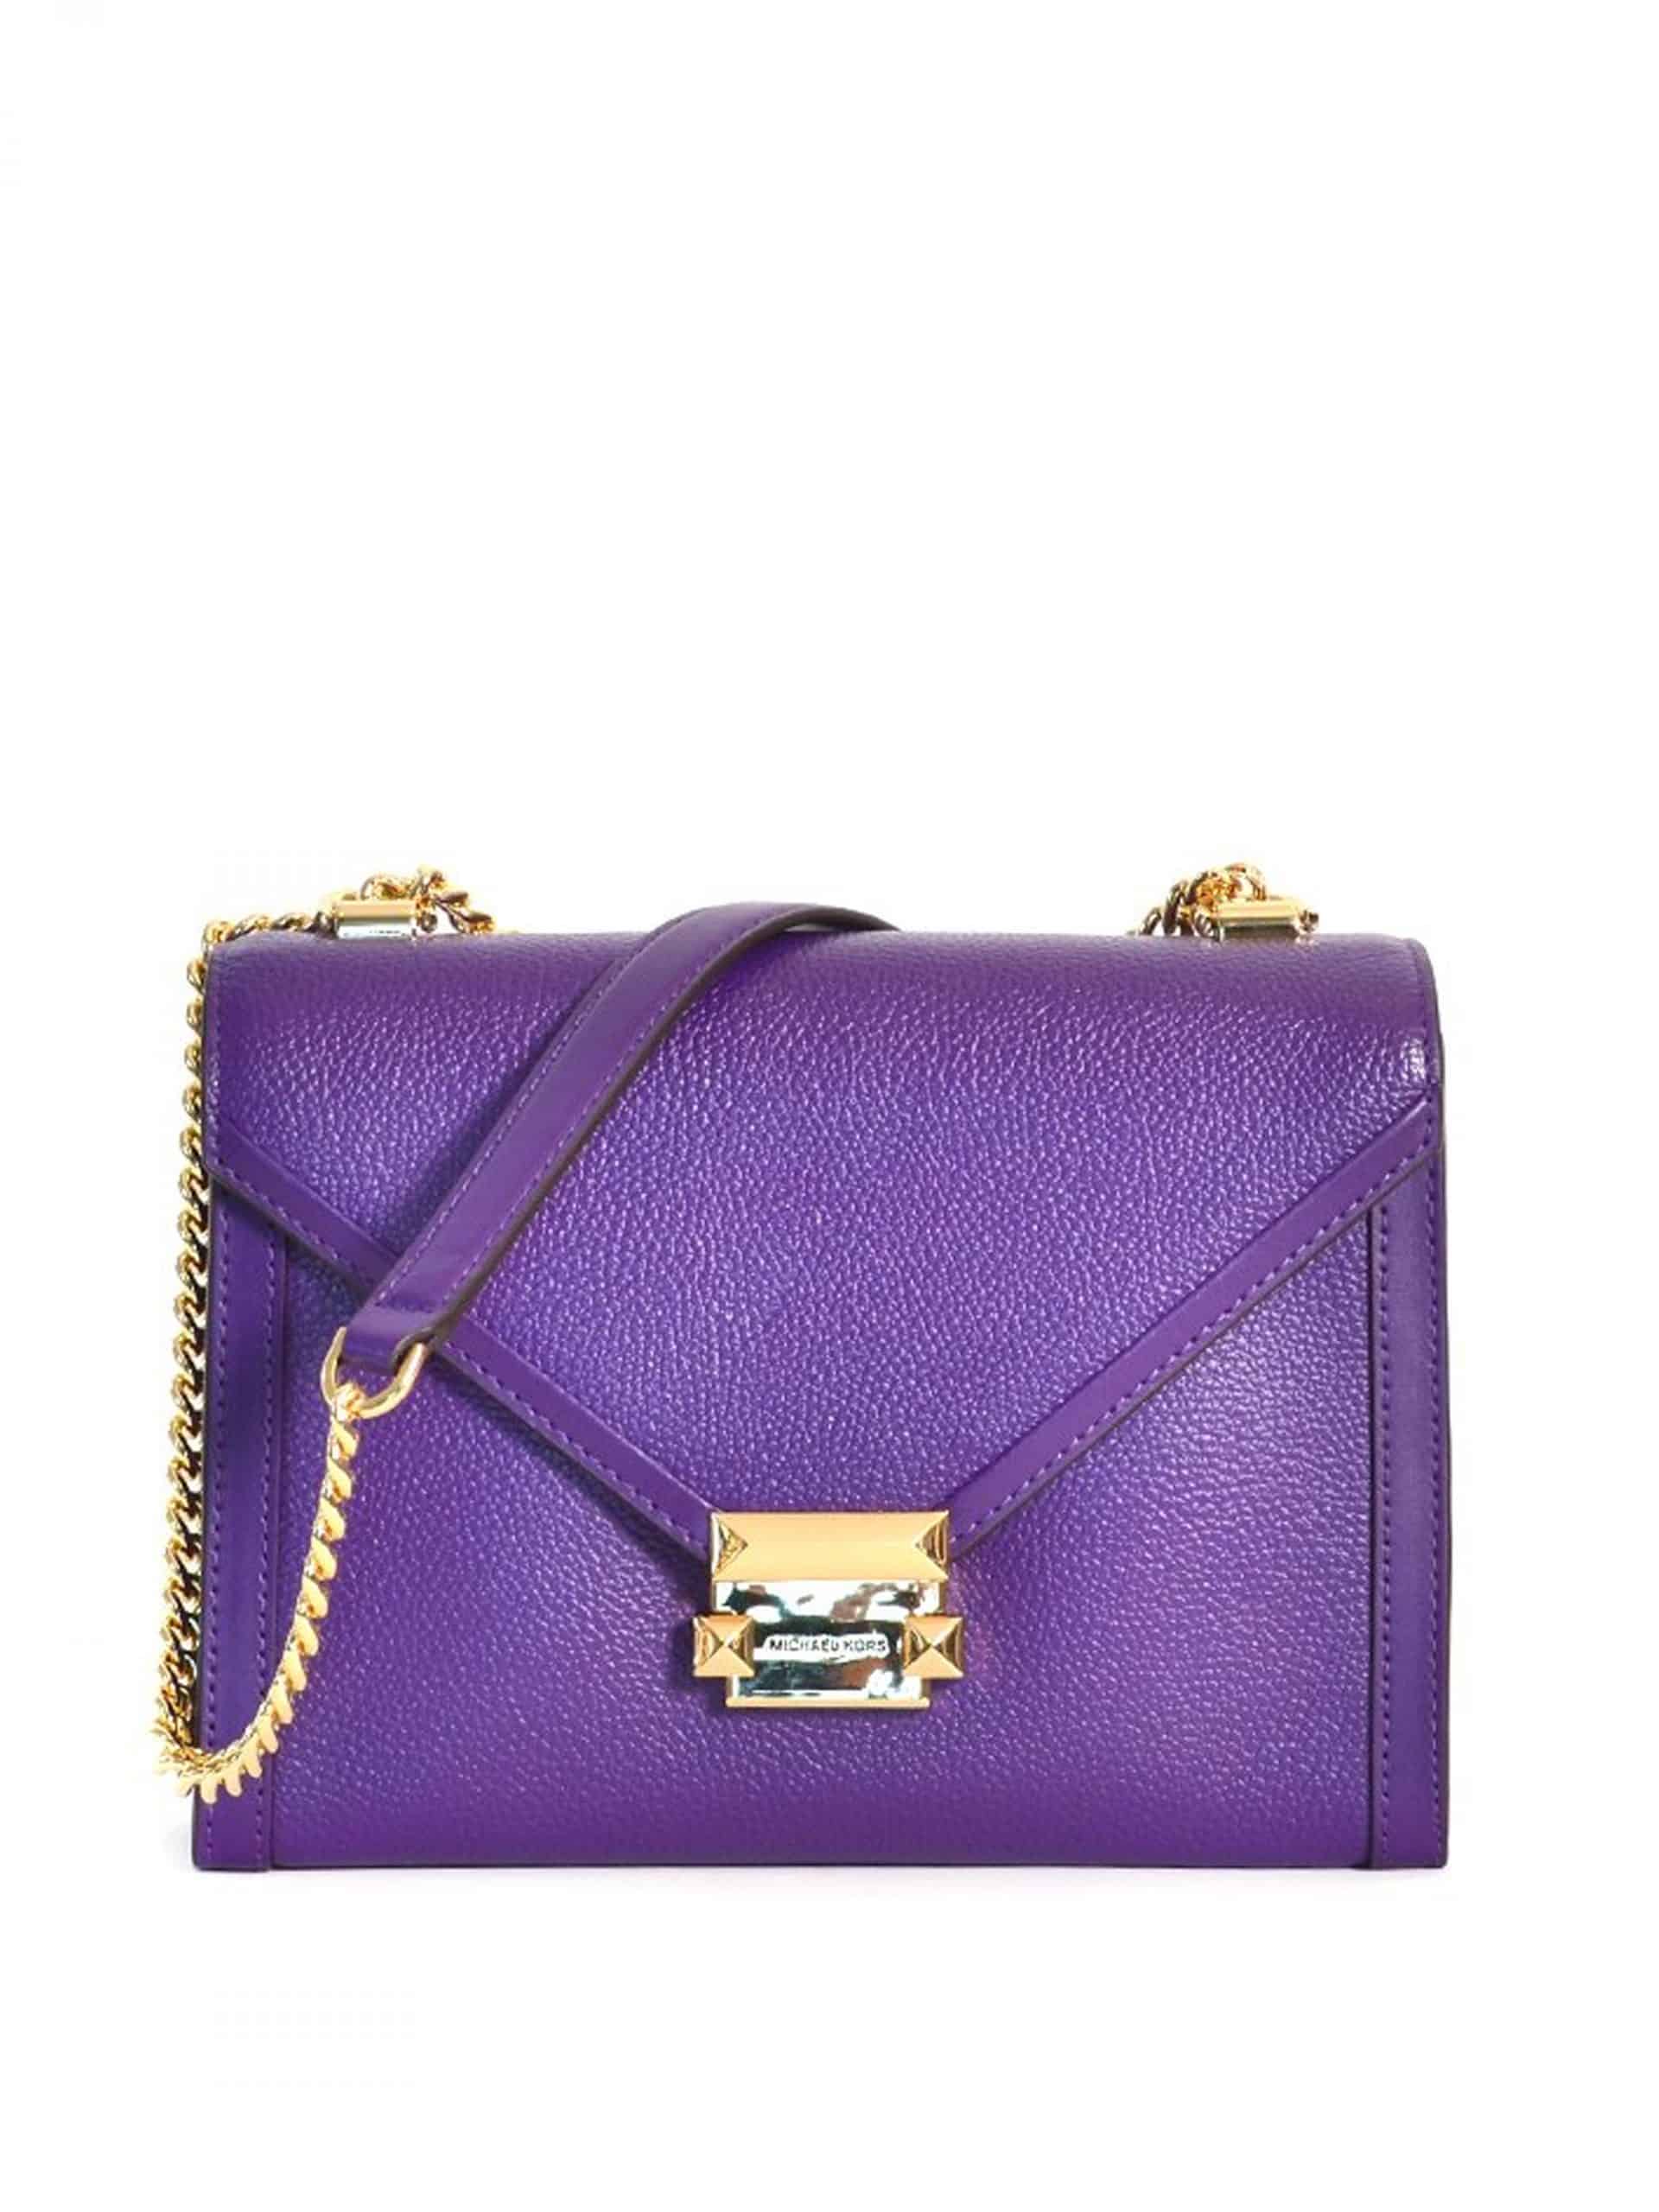 Michael Kors Whitney Large Shoulder Bag Ultra Violet - Averand